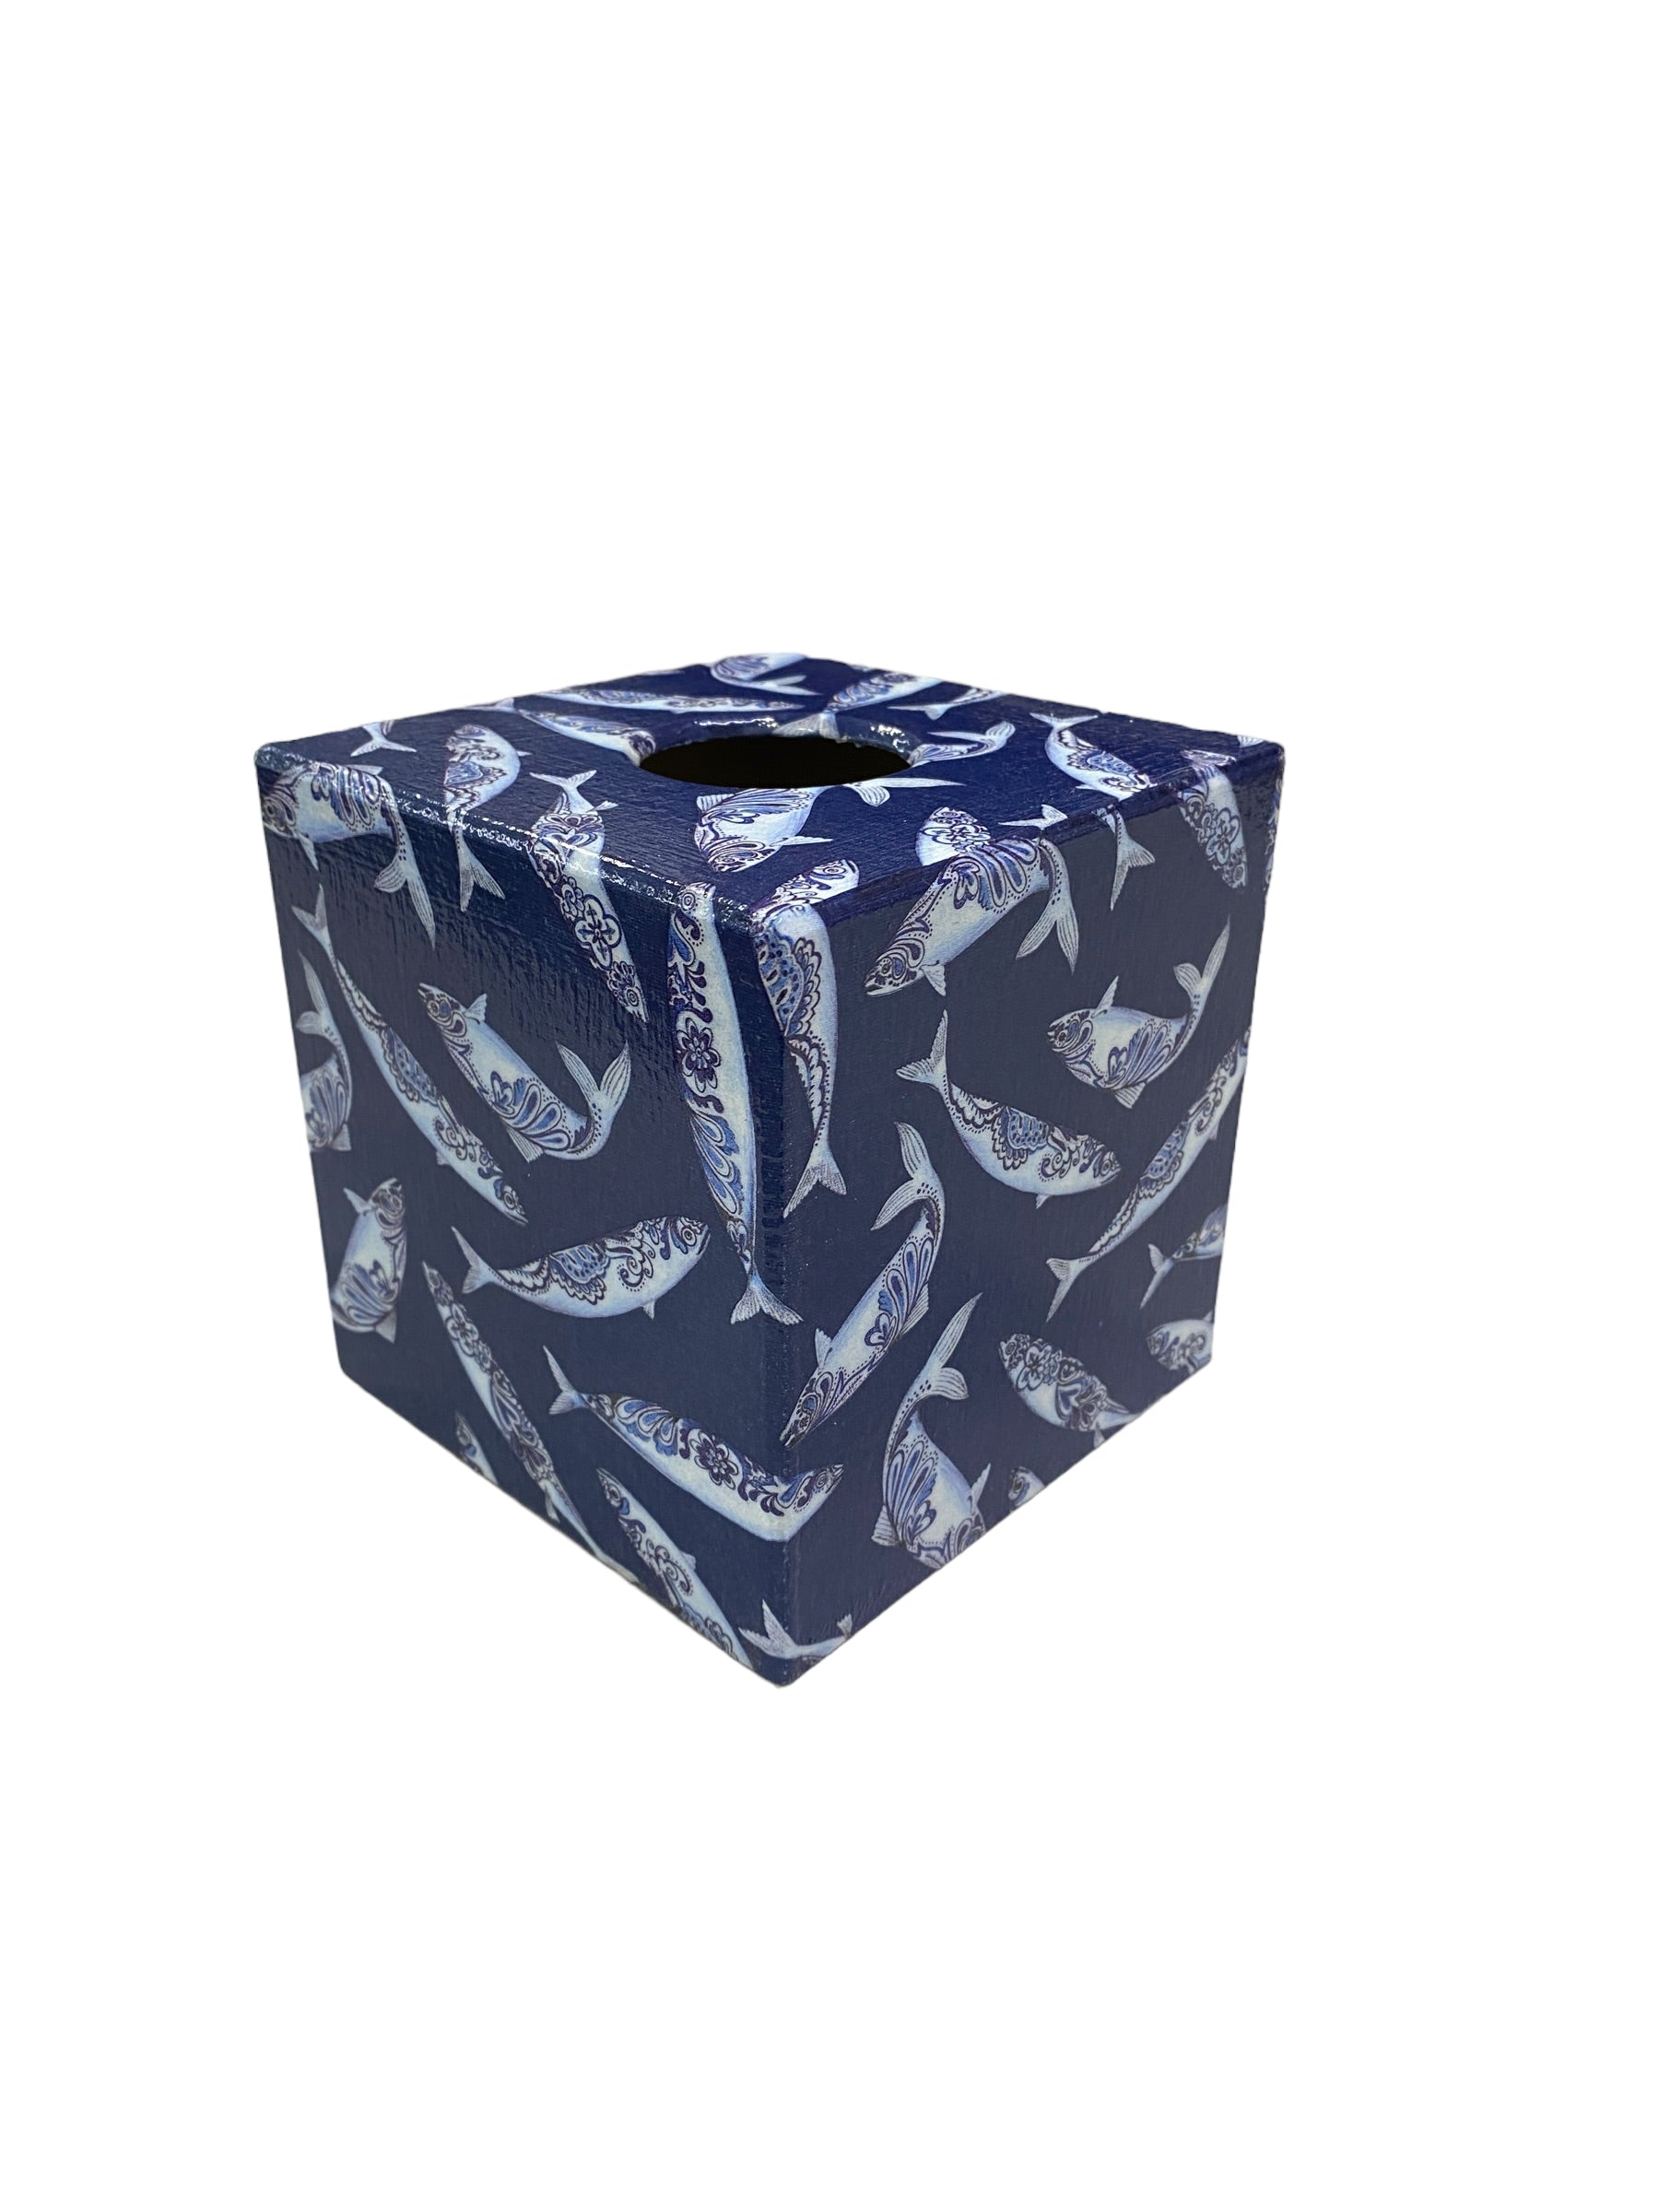 Tissue Box Cover Blue Fish